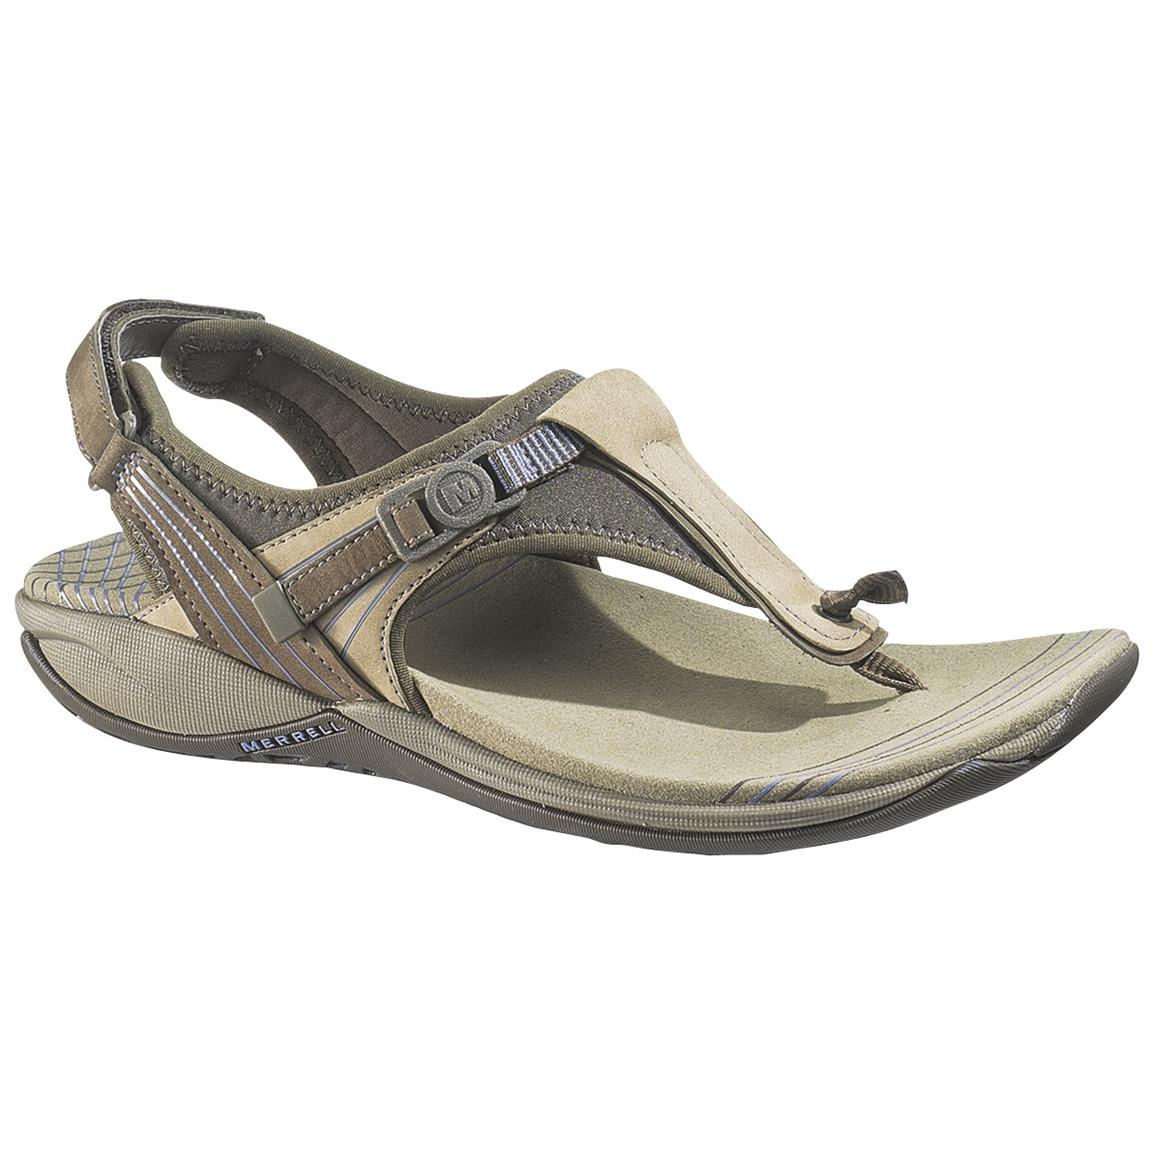 Women's Merrell® Daisy Sandals - 177759, Sandals & Flip Flops at ...